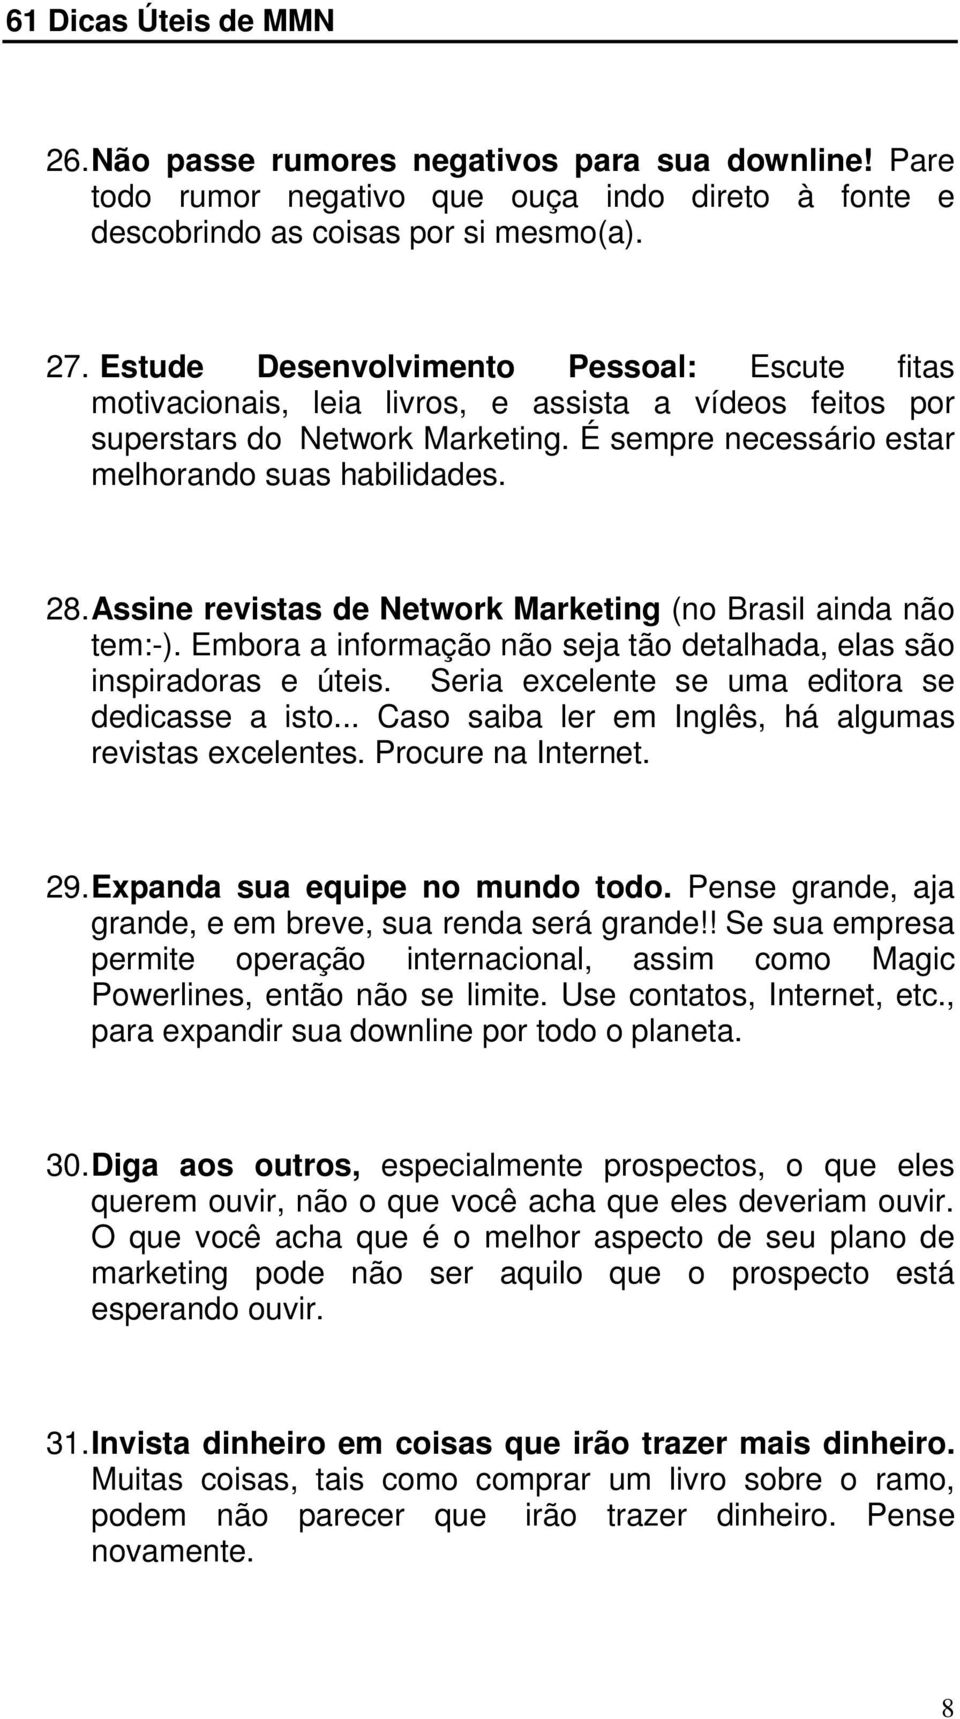 Assine revistas de Network Marketing (no Brasil ainda não tem:-). Embora a informação não seja tão detalhada, elas são inspiradoras e úteis. Seria excelente se uma editora se dedicasse a isto.